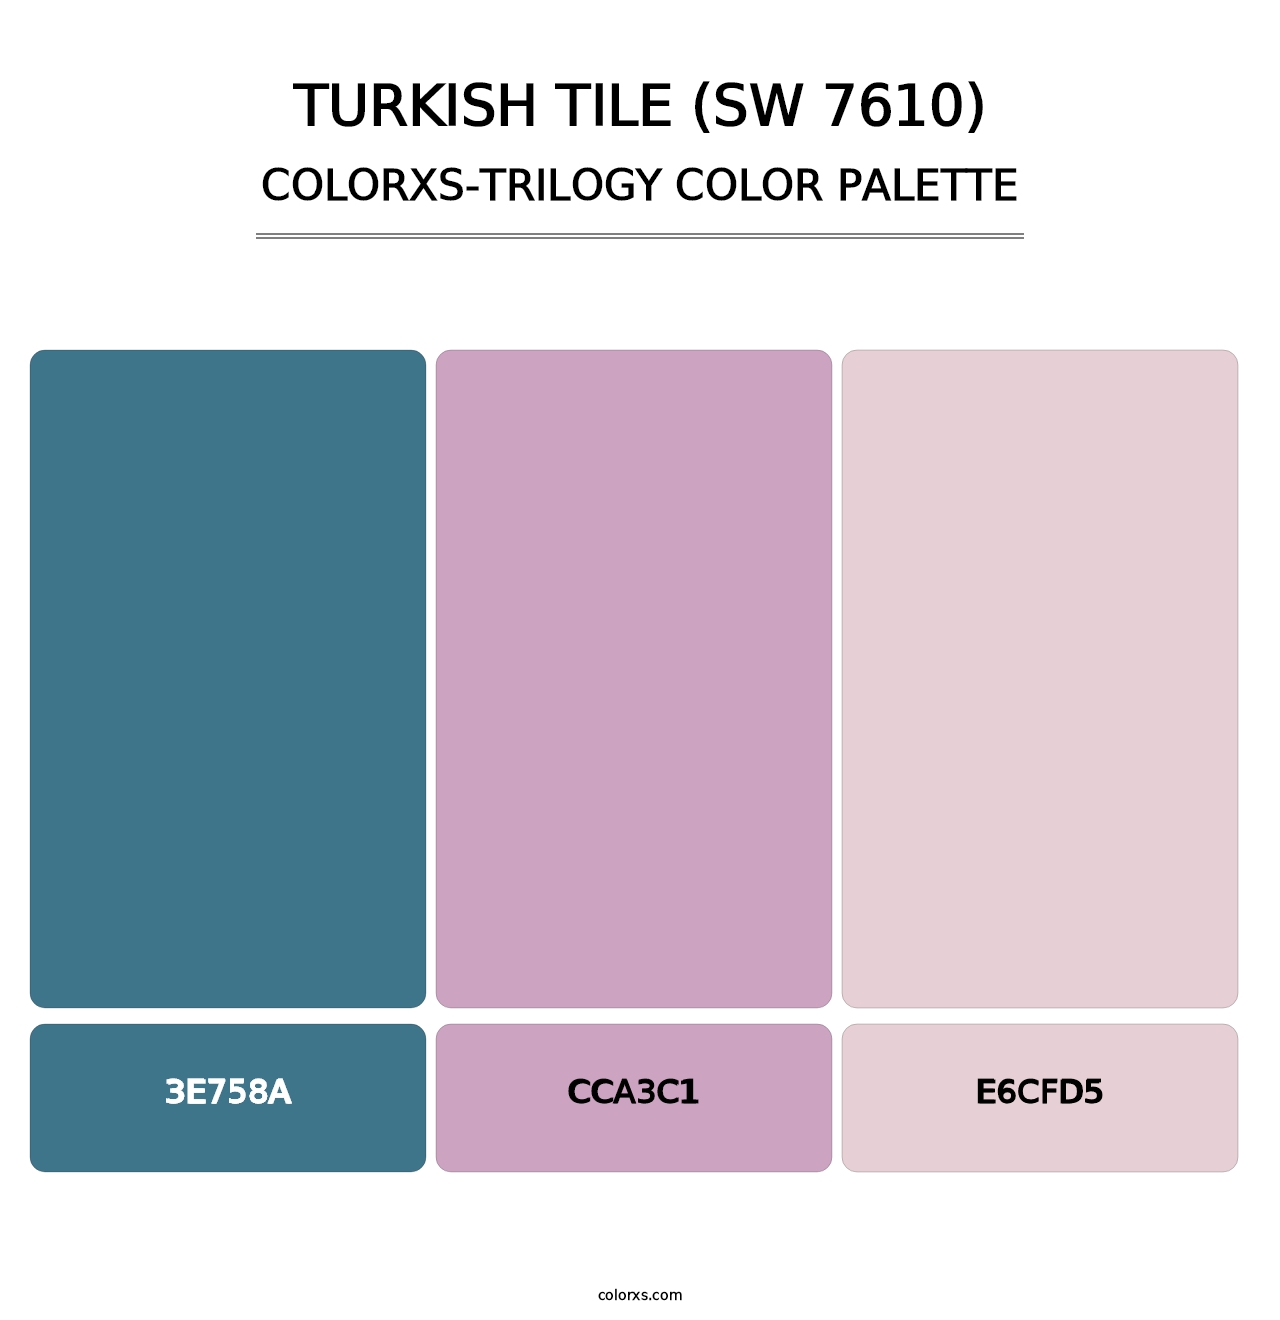 Turkish Tile (SW 7610) - Colorxs Trilogy Palette